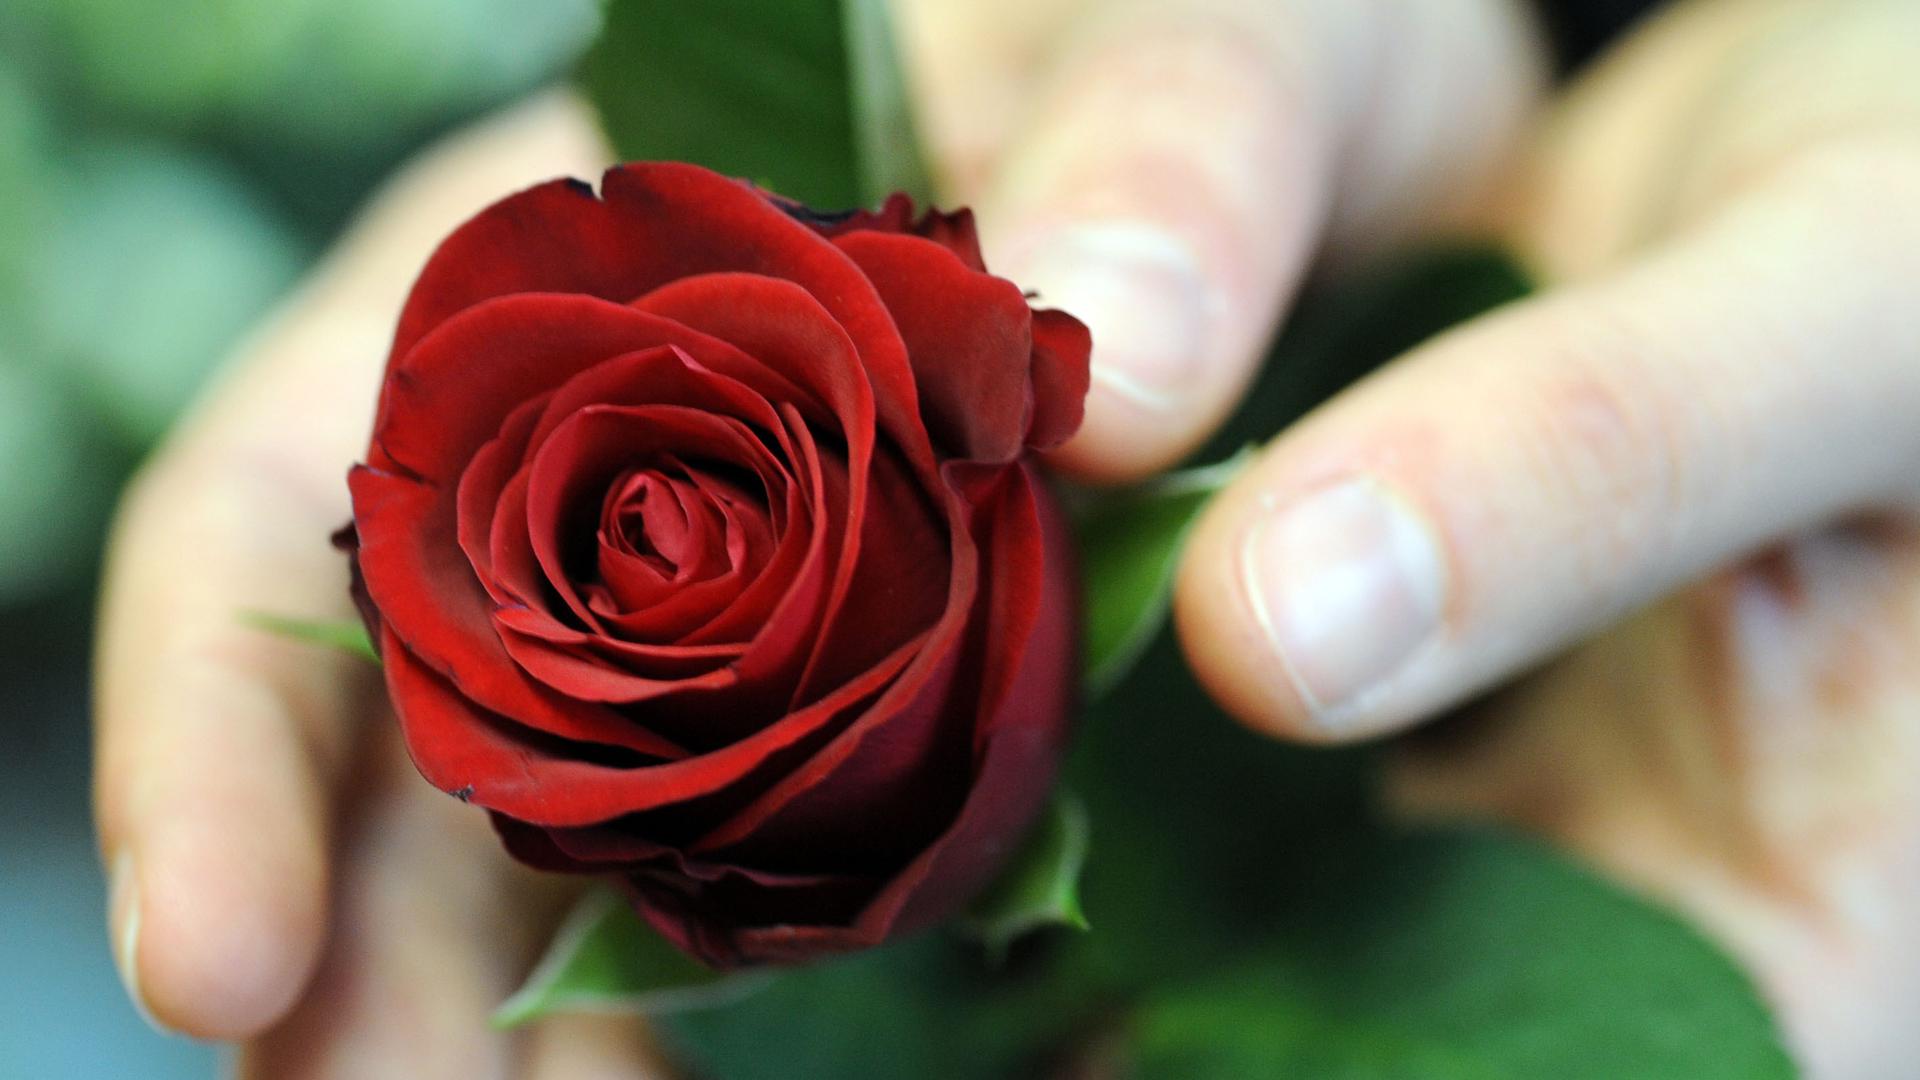 Eine Rose als Dankeschön: Politiker und Unternehmen verschenken immer wieder Rosen zum Weltfrauentag – das kommt mal besser, mal schlechter an.